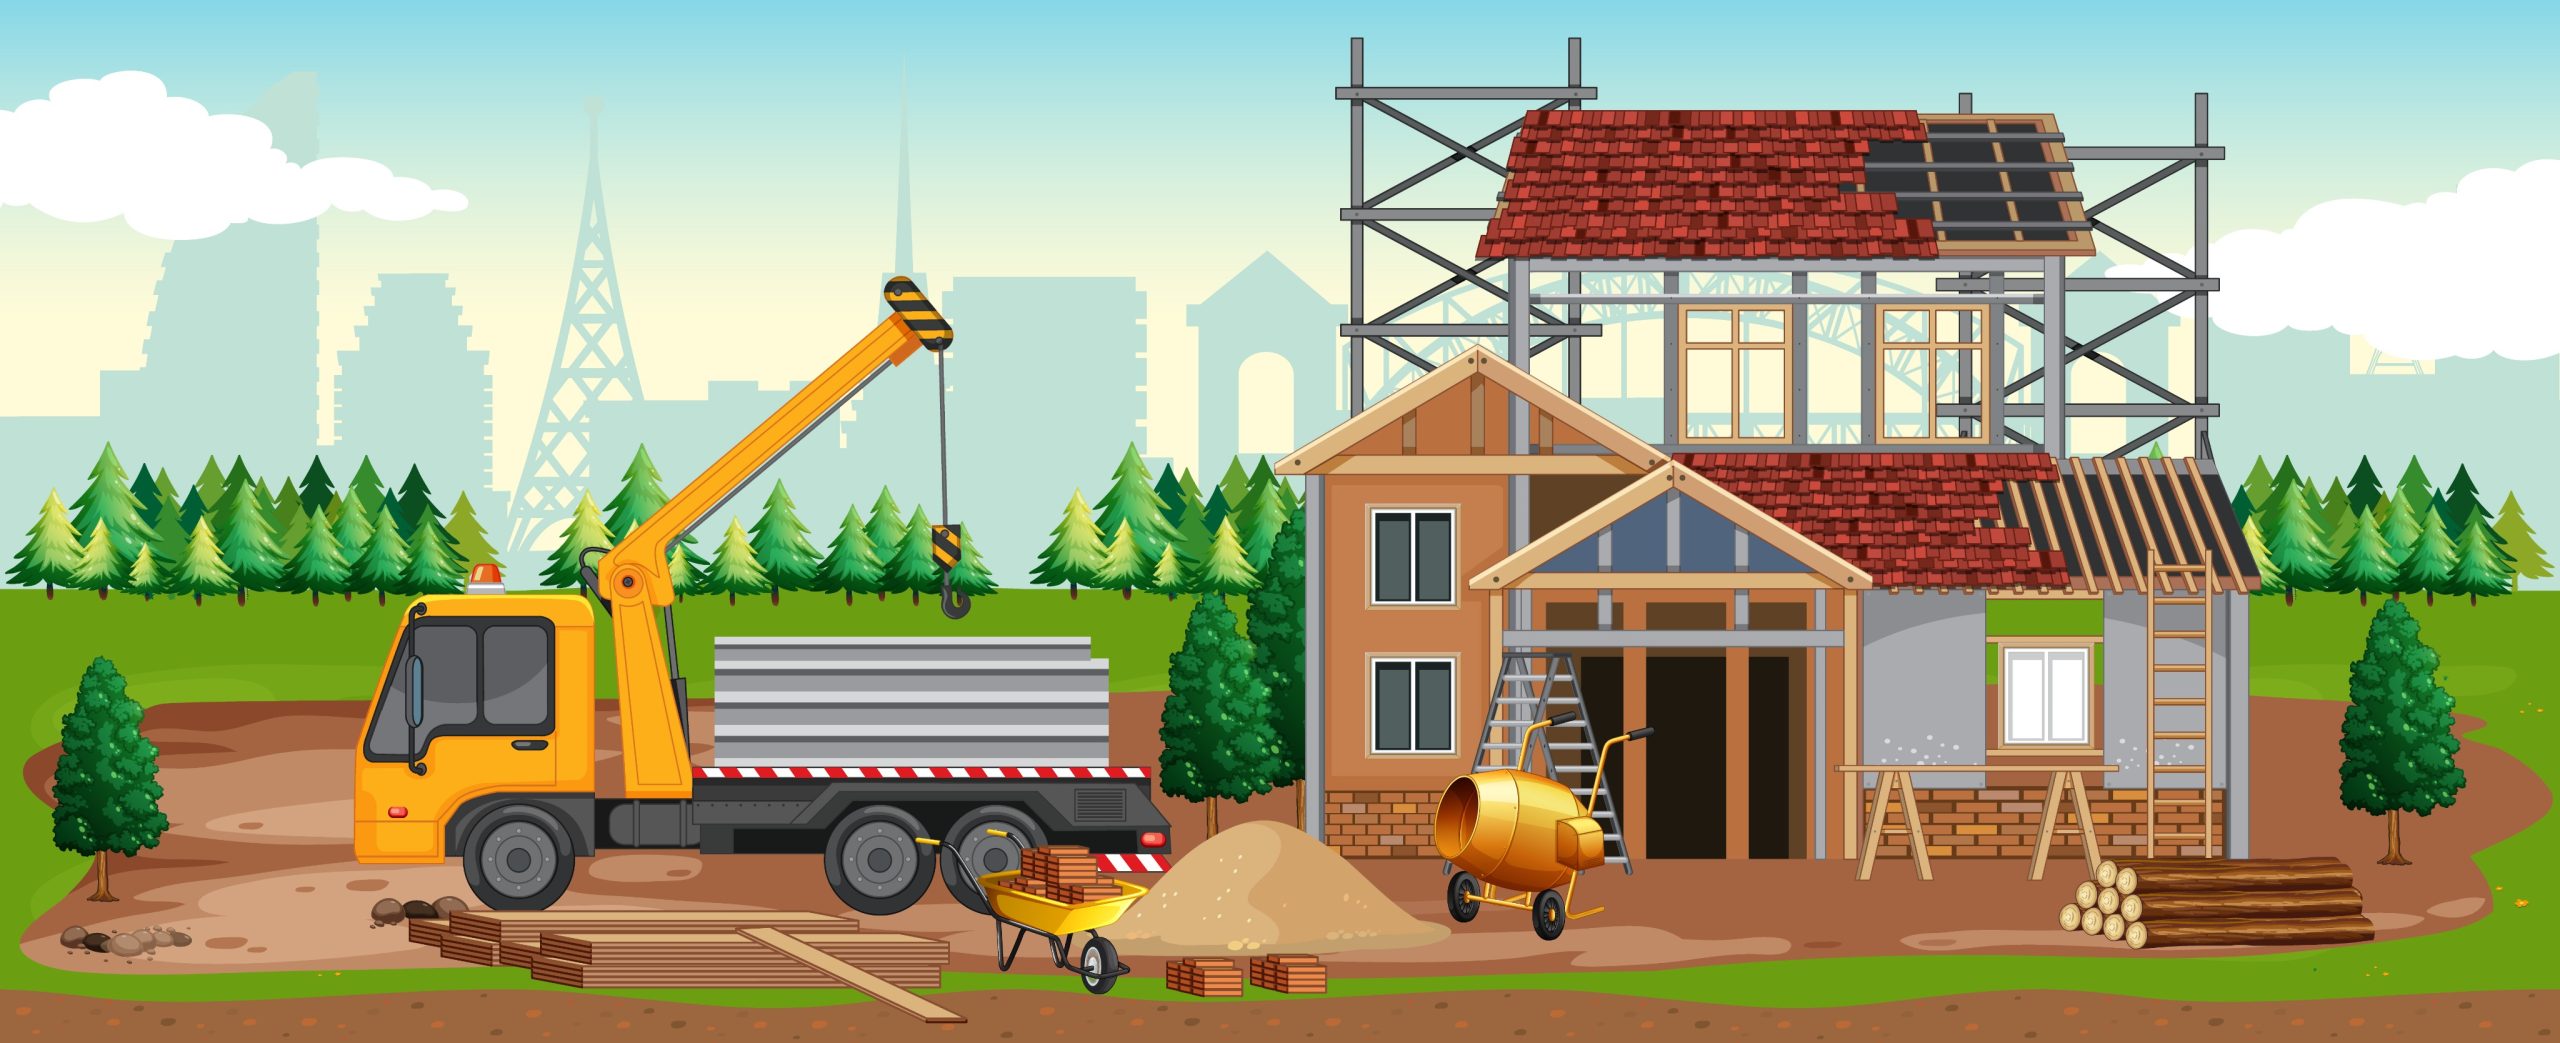 Tự xây nhà, bạn có thể tiết kiệm được rất nhiều chi phí?